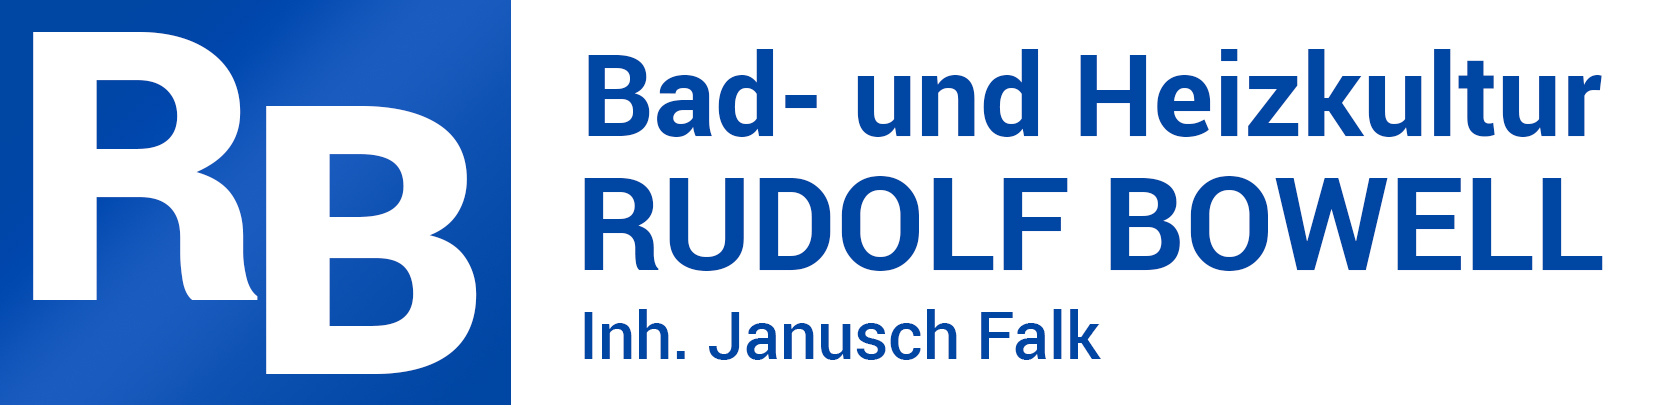 Bad- und Heizkultur Rudolf Bowell, Inh. Janusch Falk